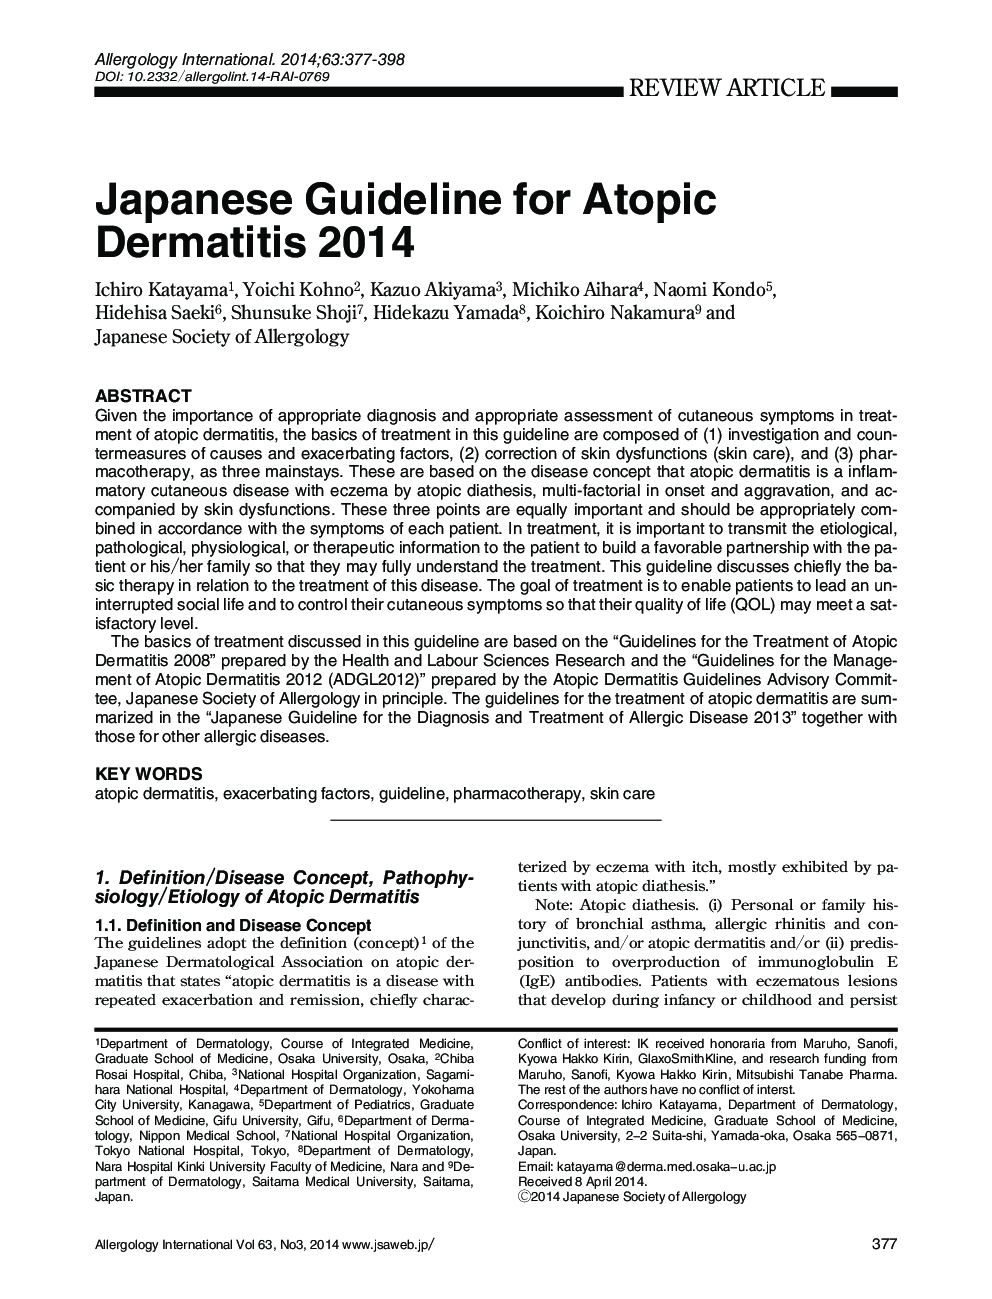 دستورالعمل ژاپنی برای درماتیت آتوپیک 2014 